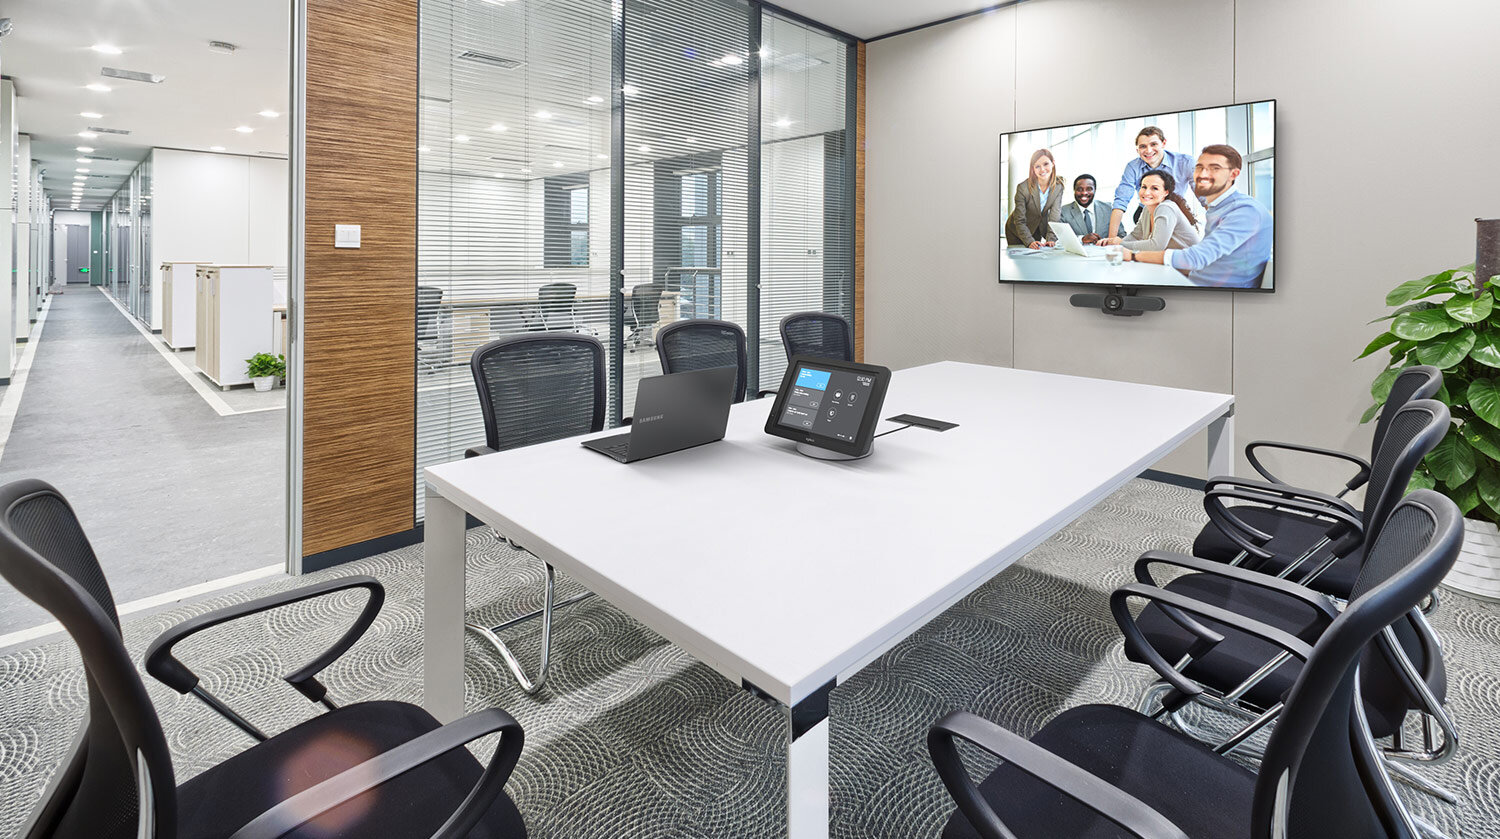 Copy of Zoom Modern Meeting Room